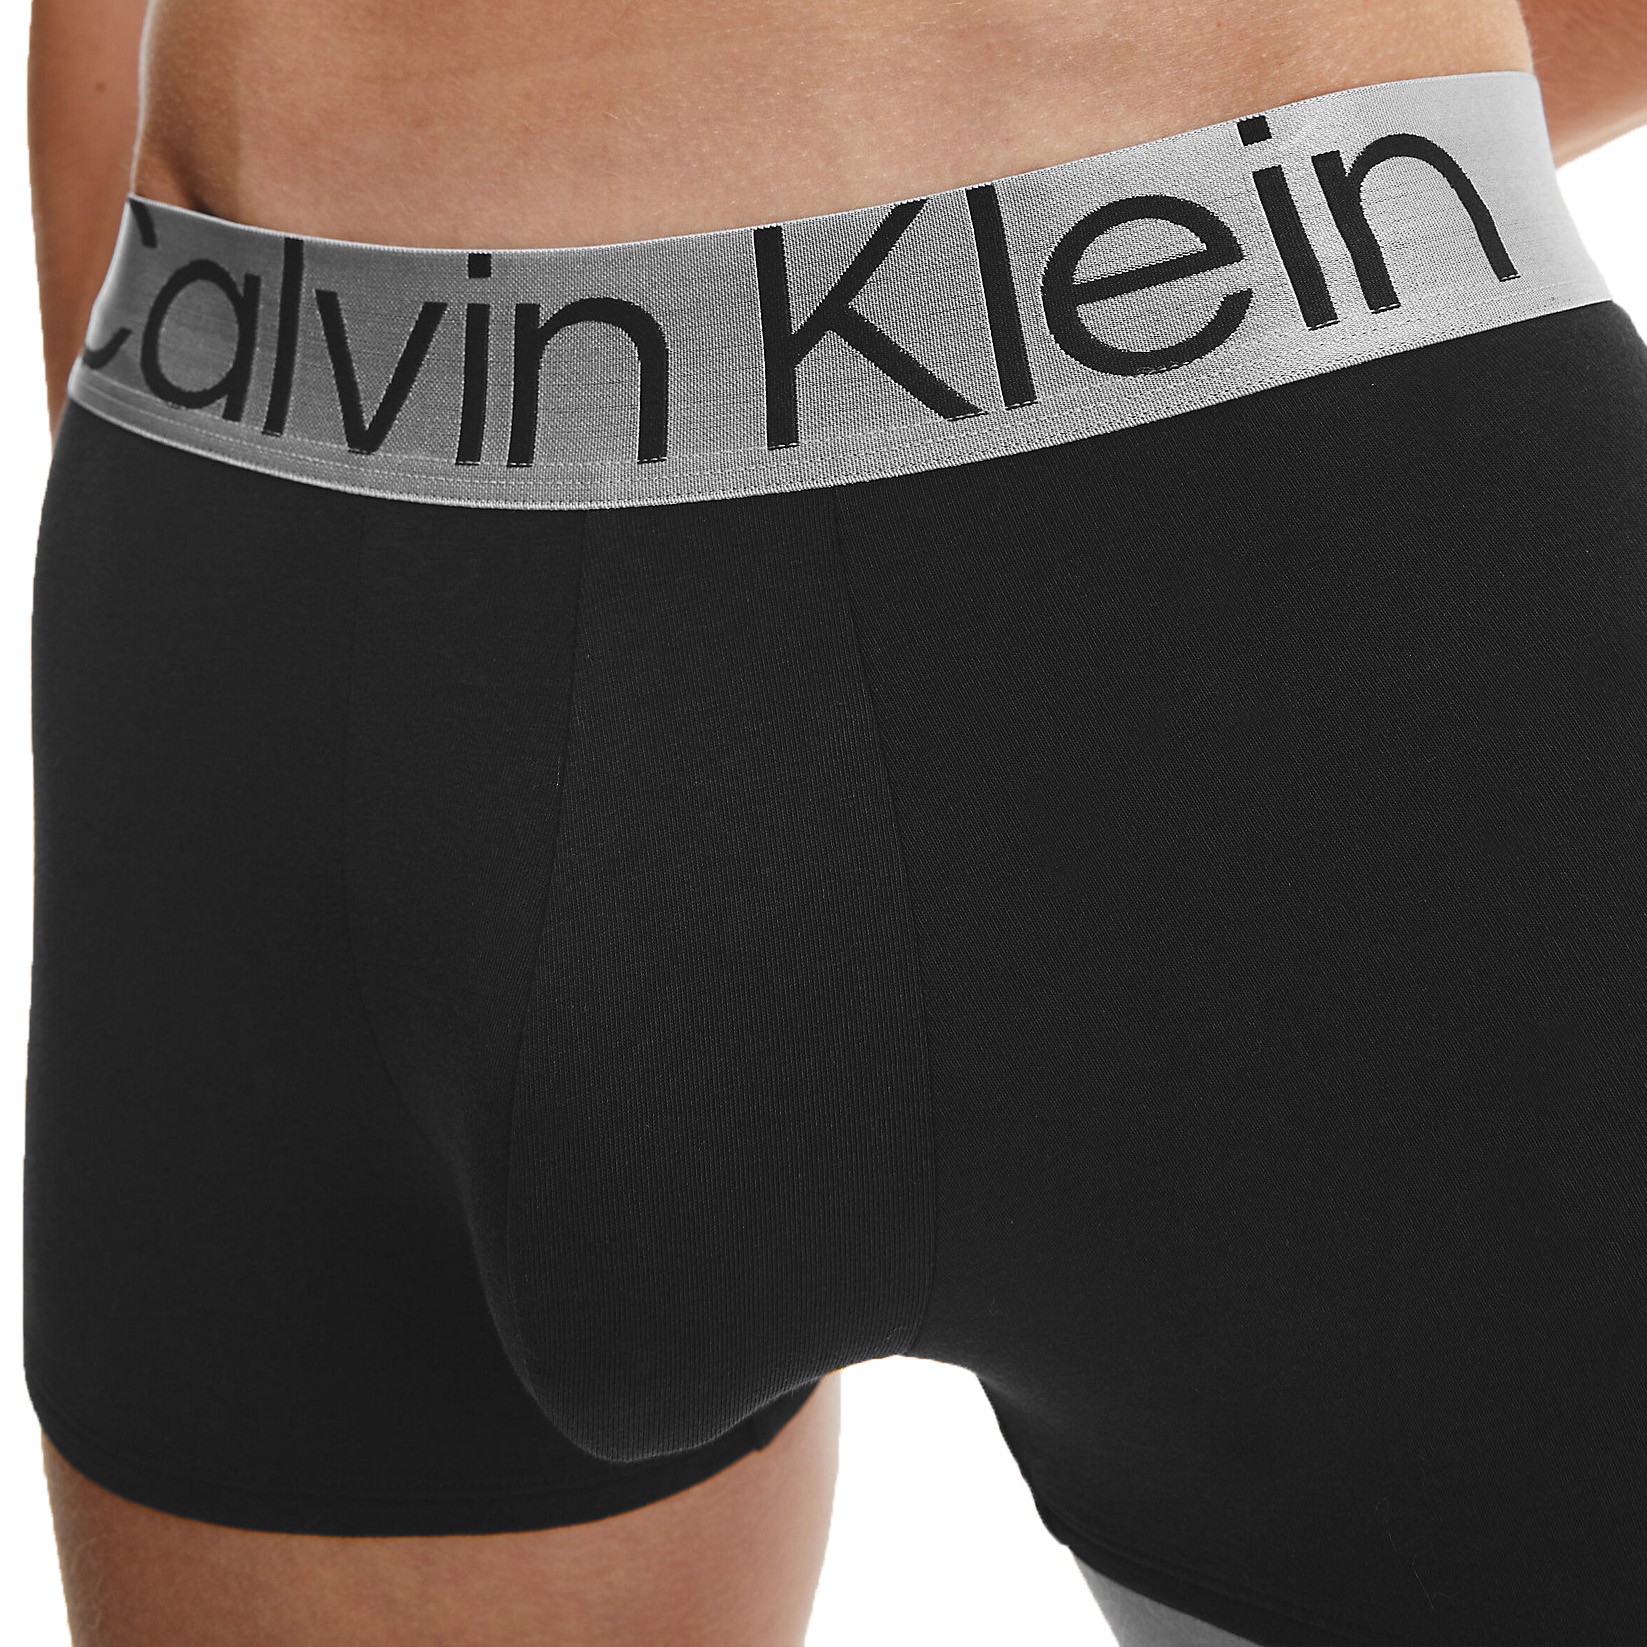  Calvin Klein Calzoncillos bóxer clásicos de algodón para hombre  (3 unidades), Negro, oliva oscuro, rosa ceniza, gris jaspeado Wbs : Ropa,  Zapatos y Joyería